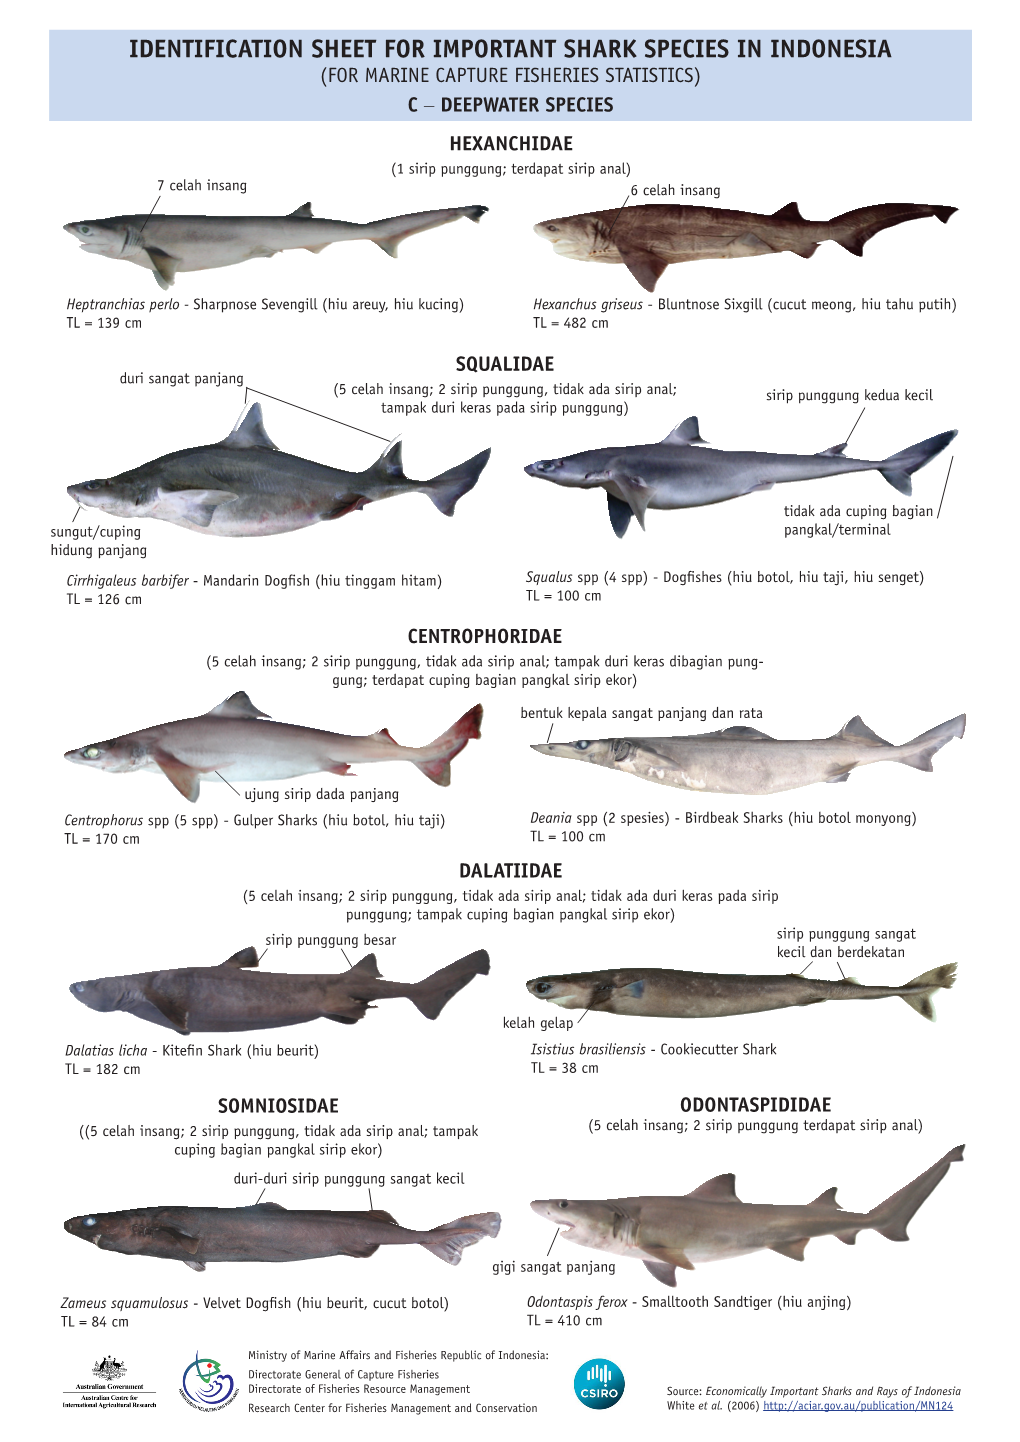 Identification Sheet for Deepwater Sharks